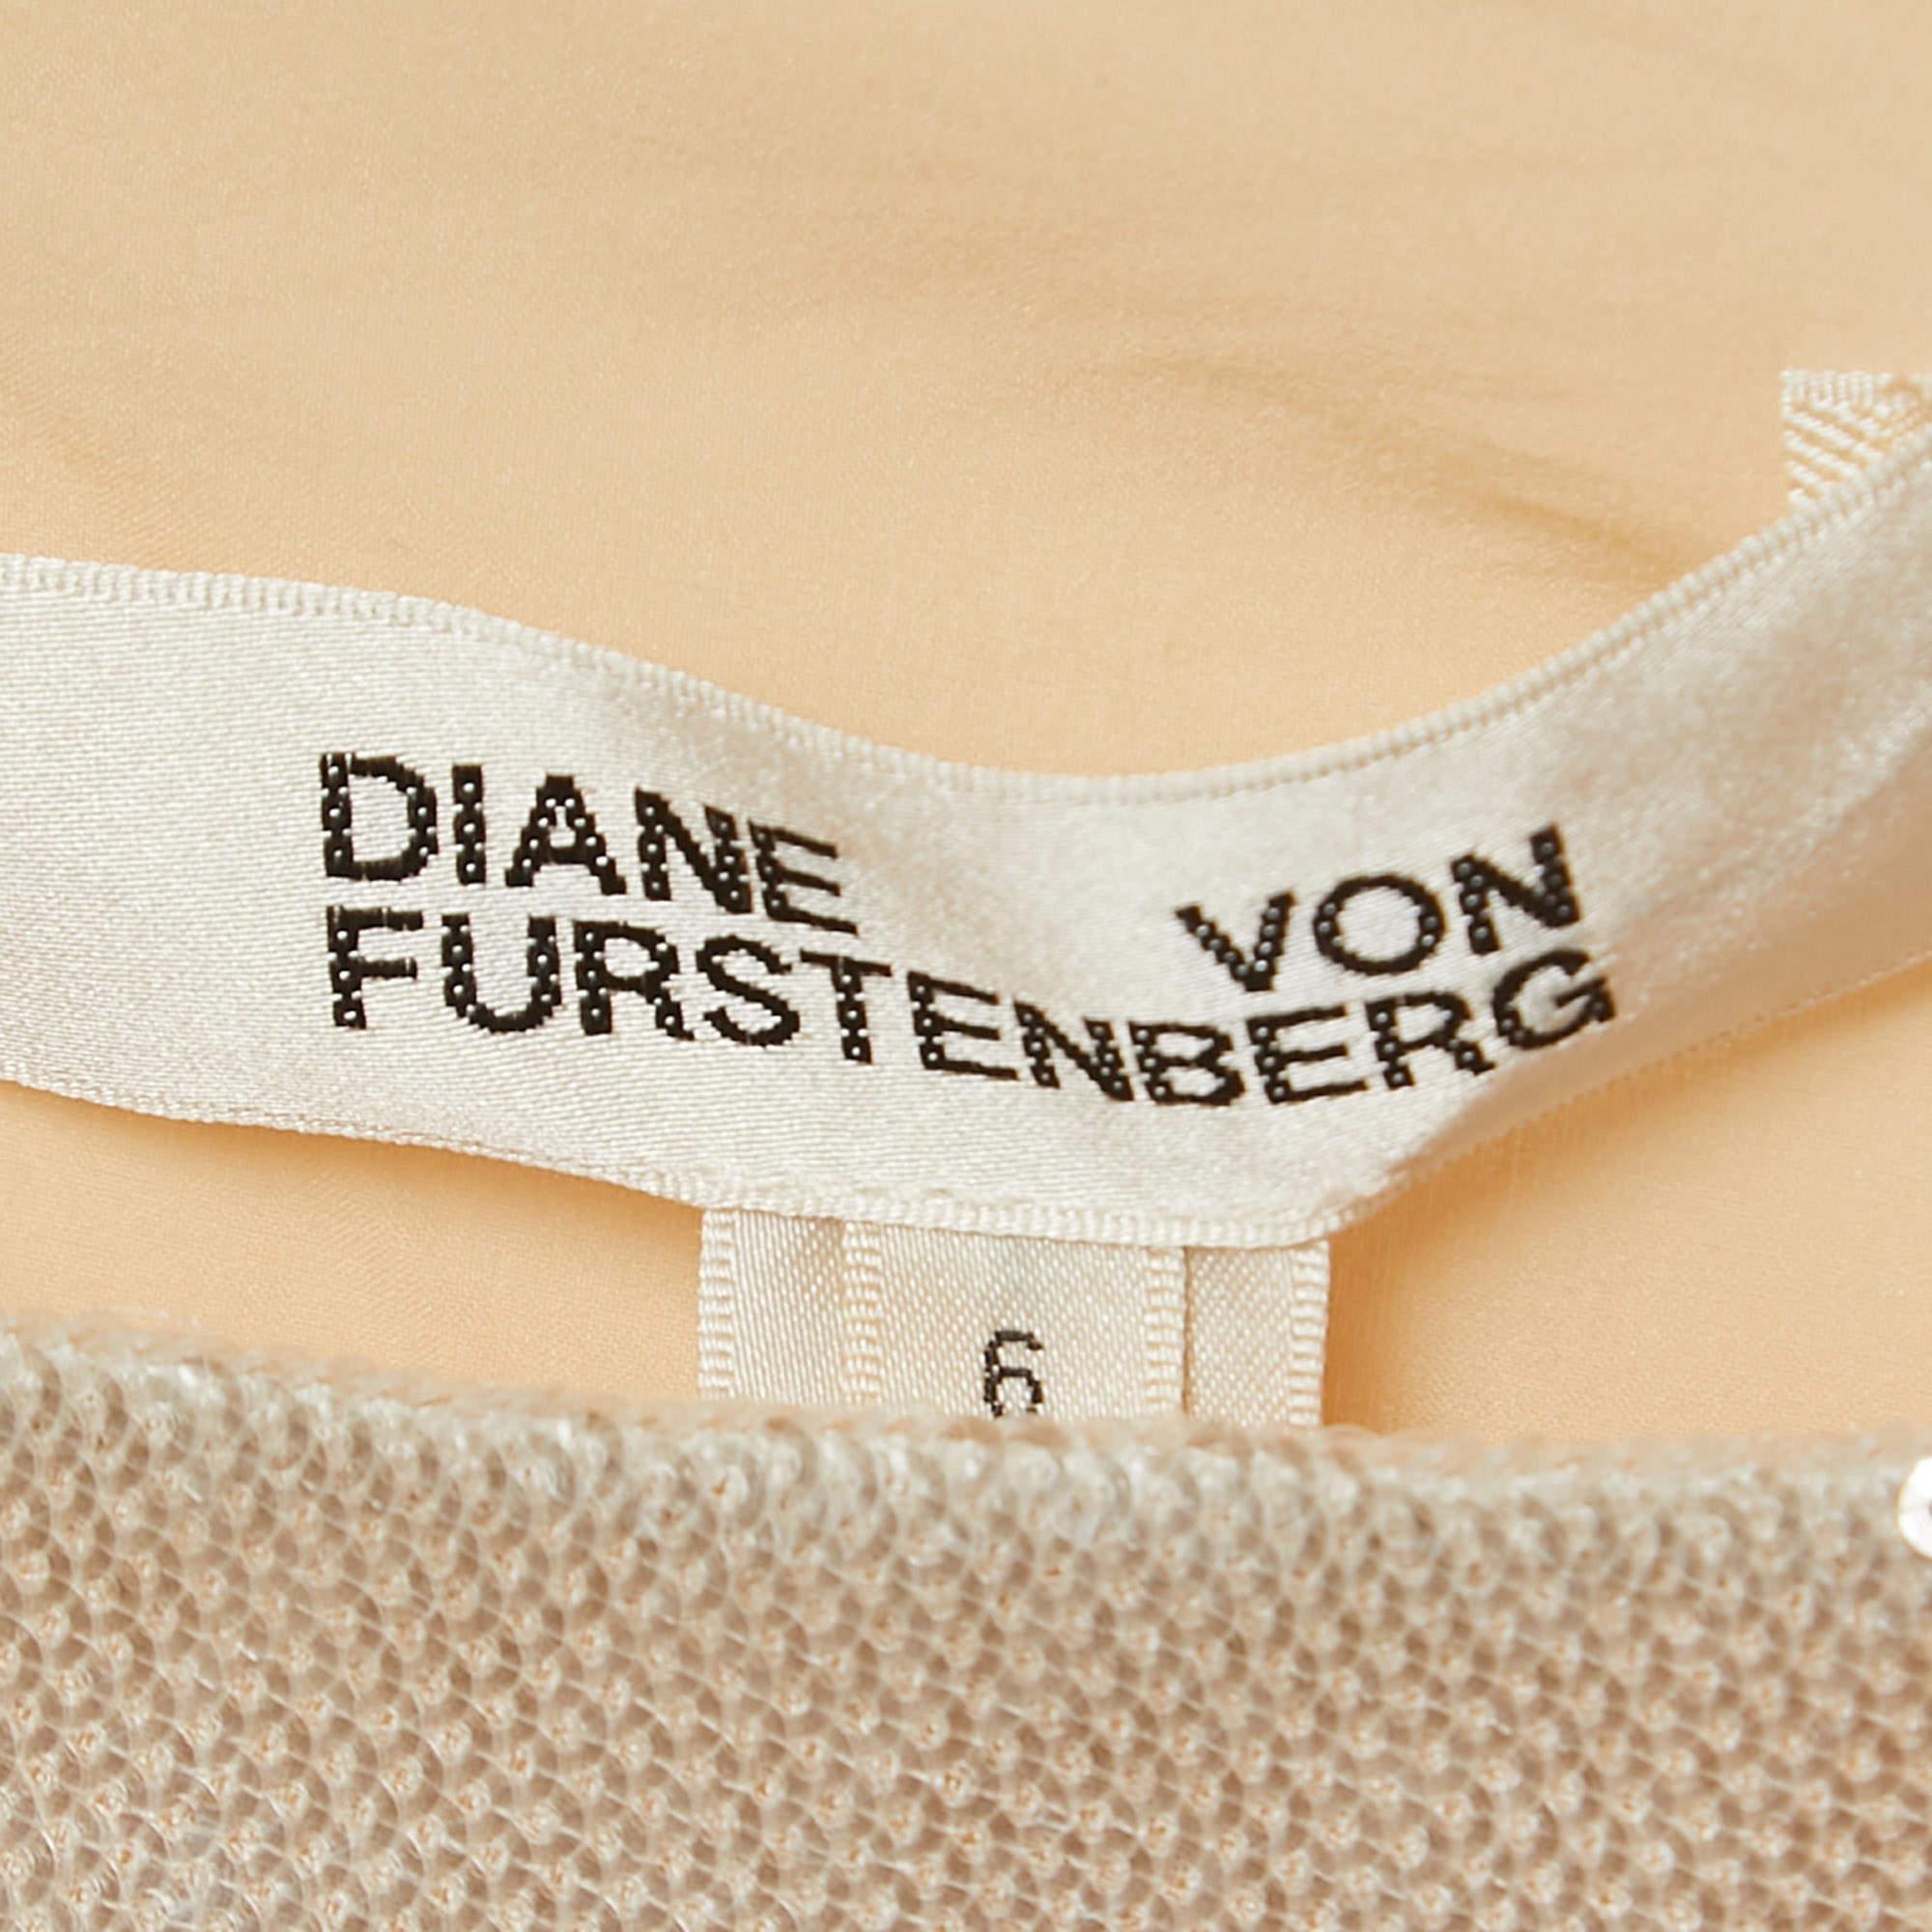 Diane Von Furstenberg Off-White/Orange Sequined One Shoulder Dress M In Good Condition For Sale In Dubai, Al Qouz 2